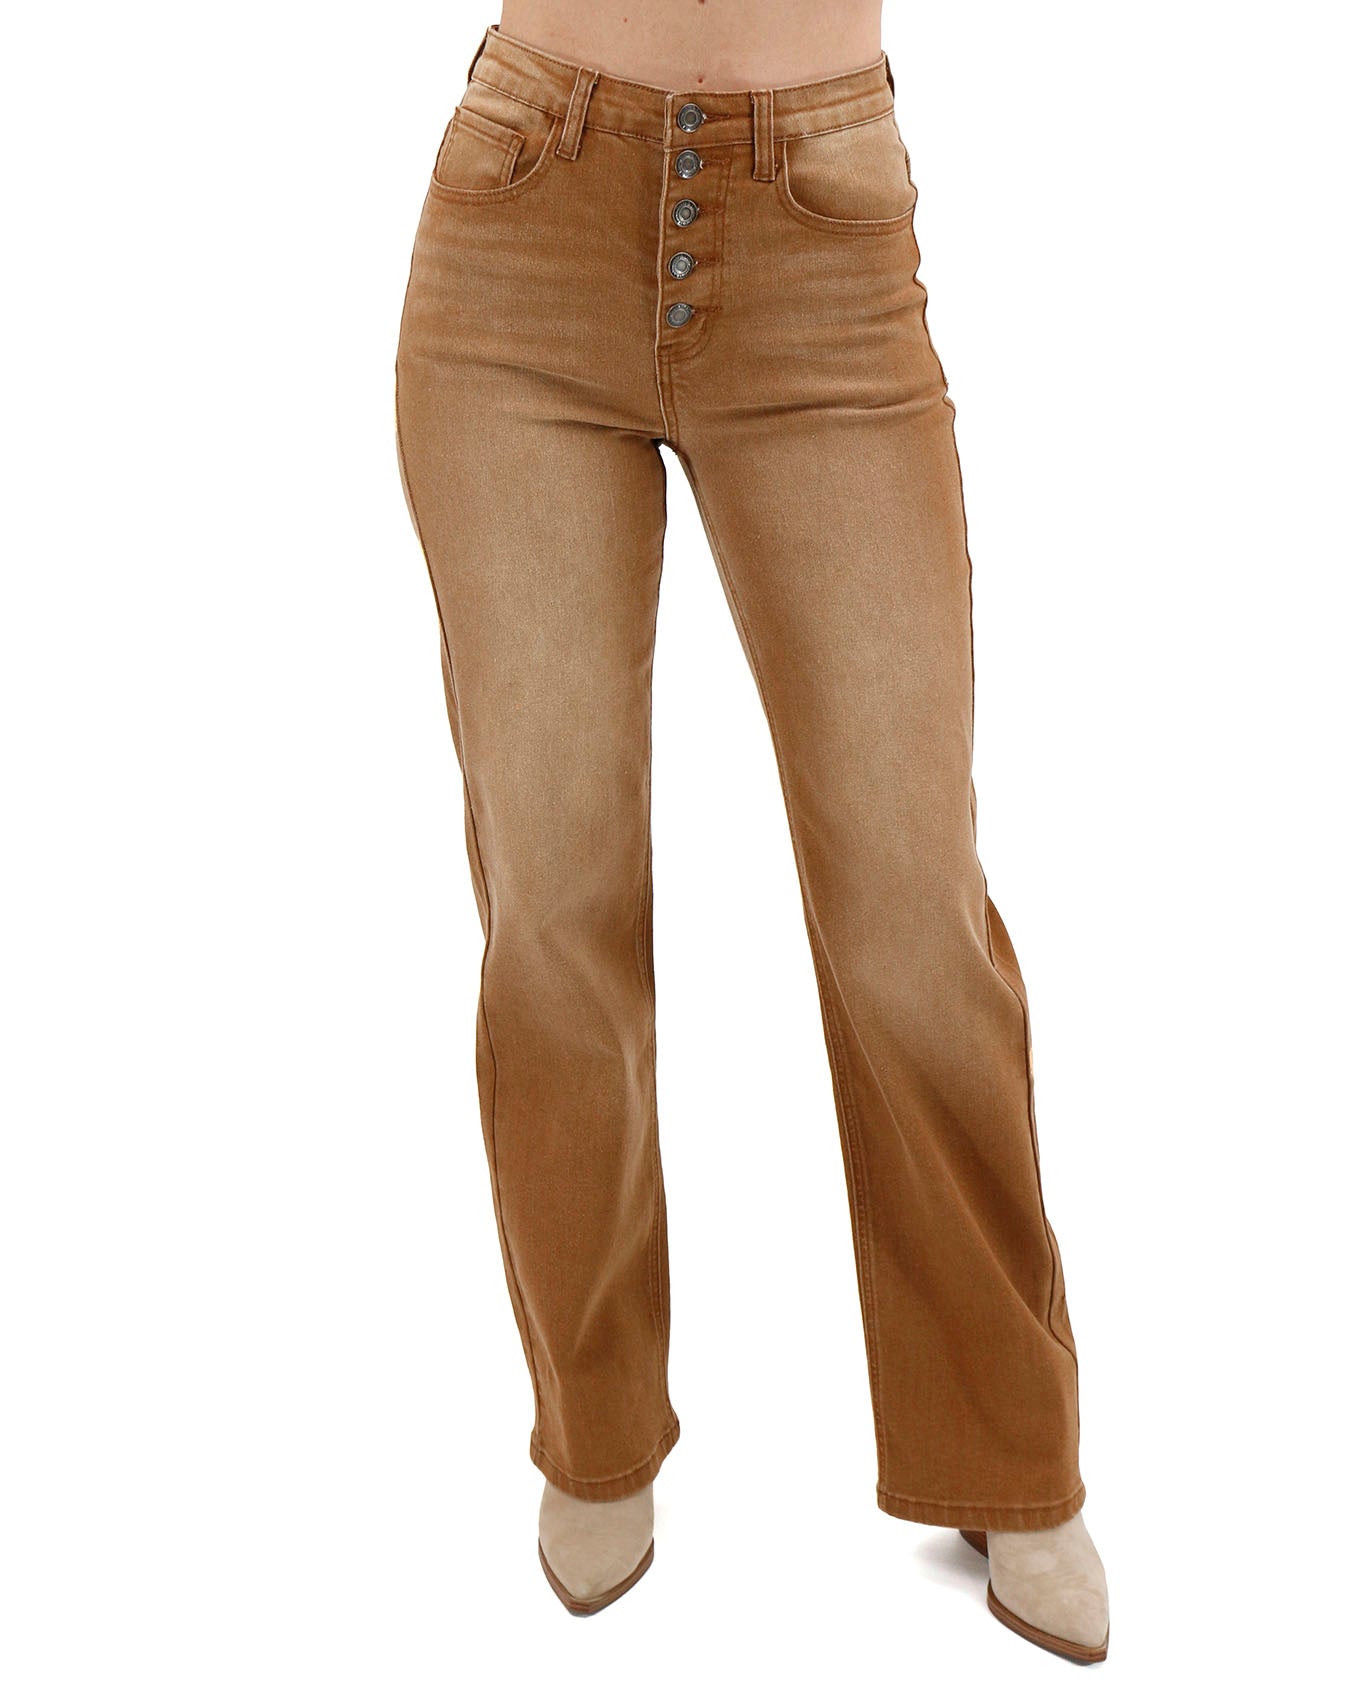 näringsidkare högtalare klimat brown jeans for women Villkorlig Simbassäng  Smuts